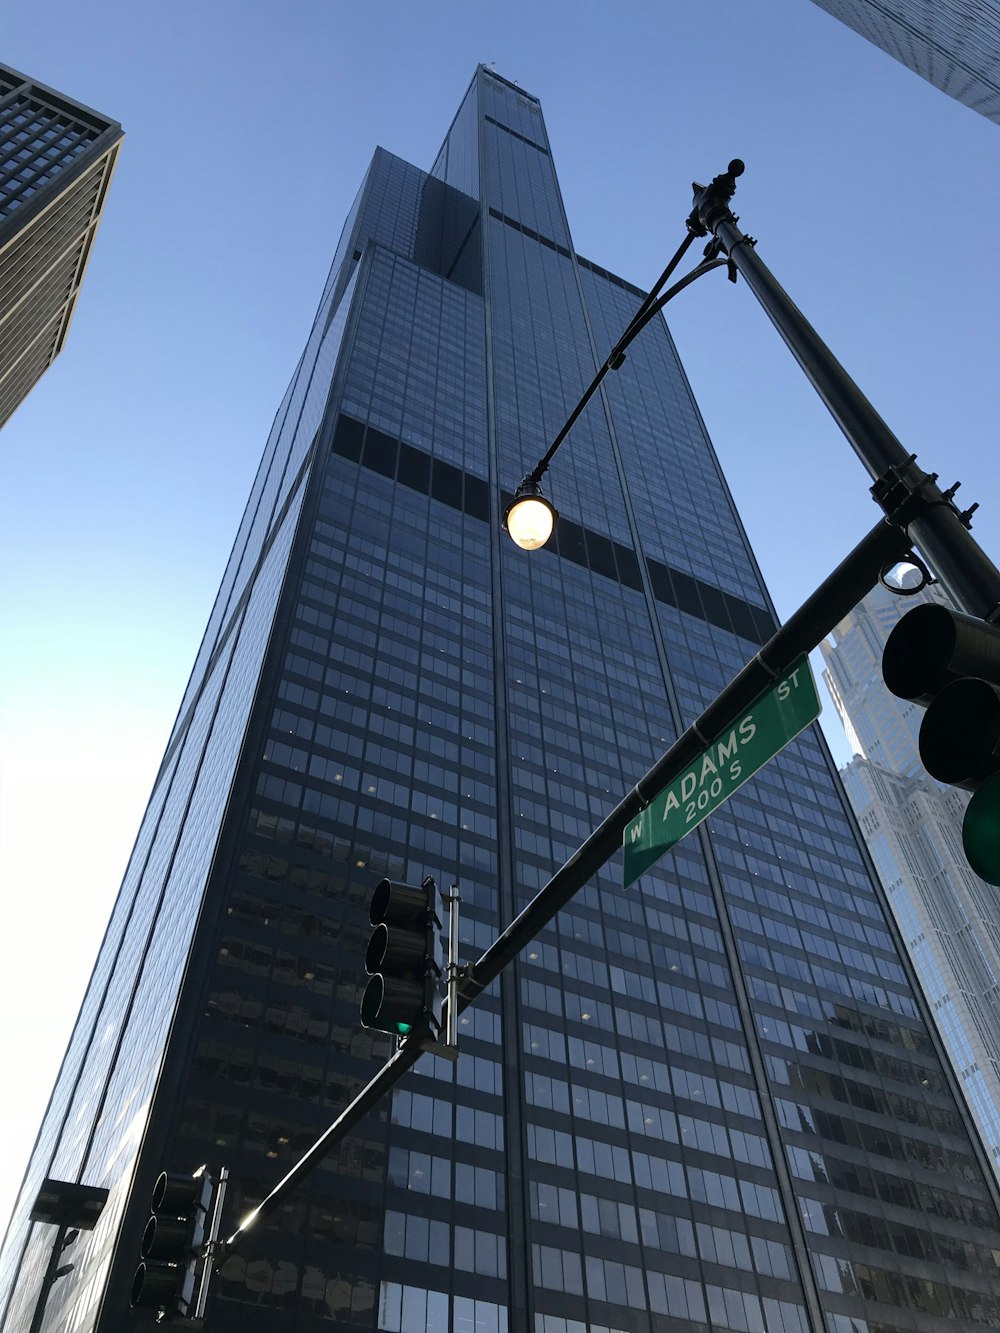 Photographie en contre-plongée d’un immeuble de verre bleu de grande hauteur